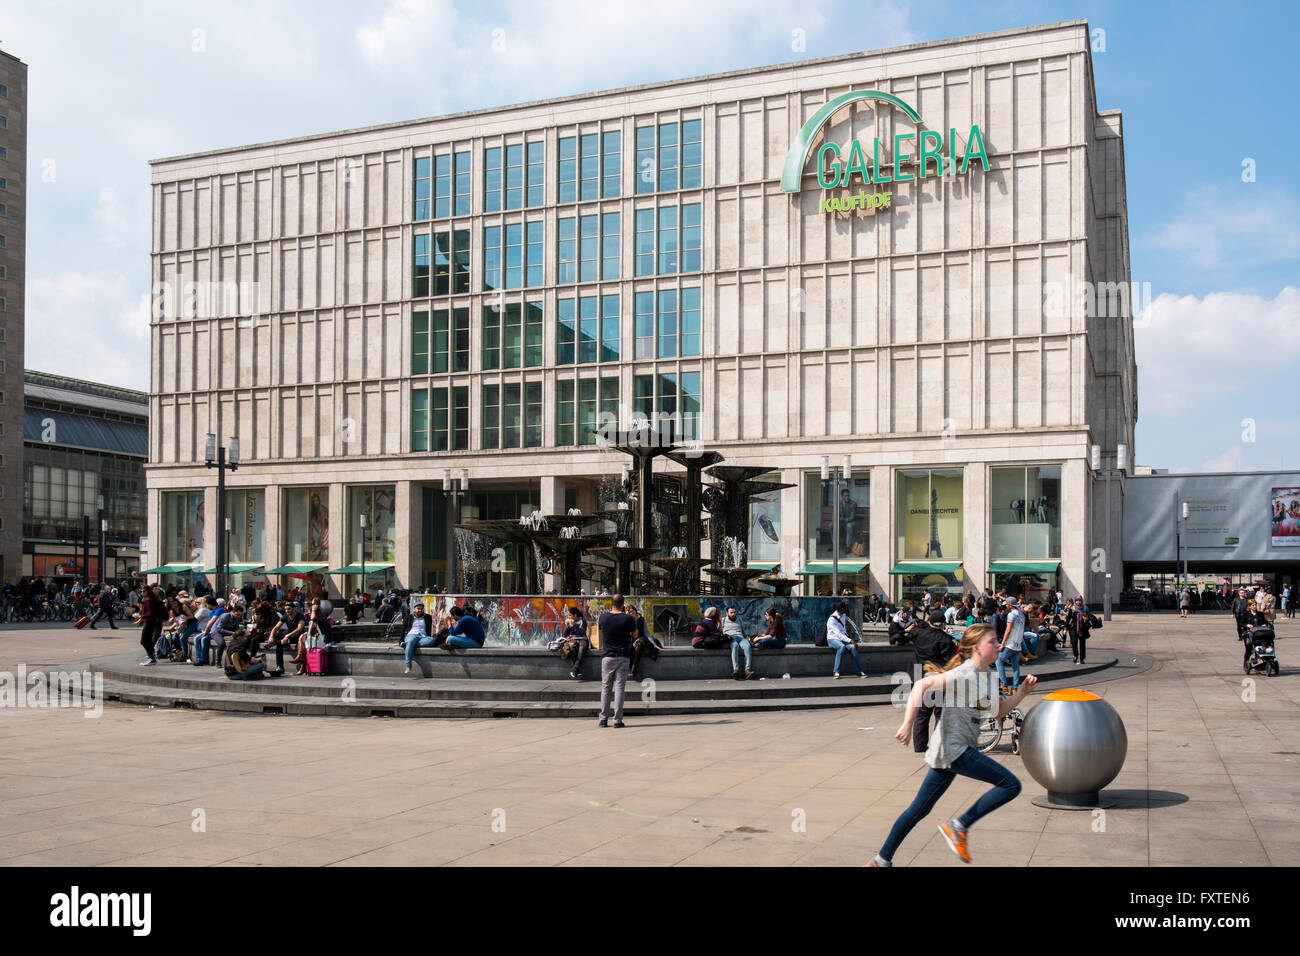 Vista exterior de la Galería Kaufhof department store en Alexanderplatz, Berlín Mitte Alemania Foto de stock